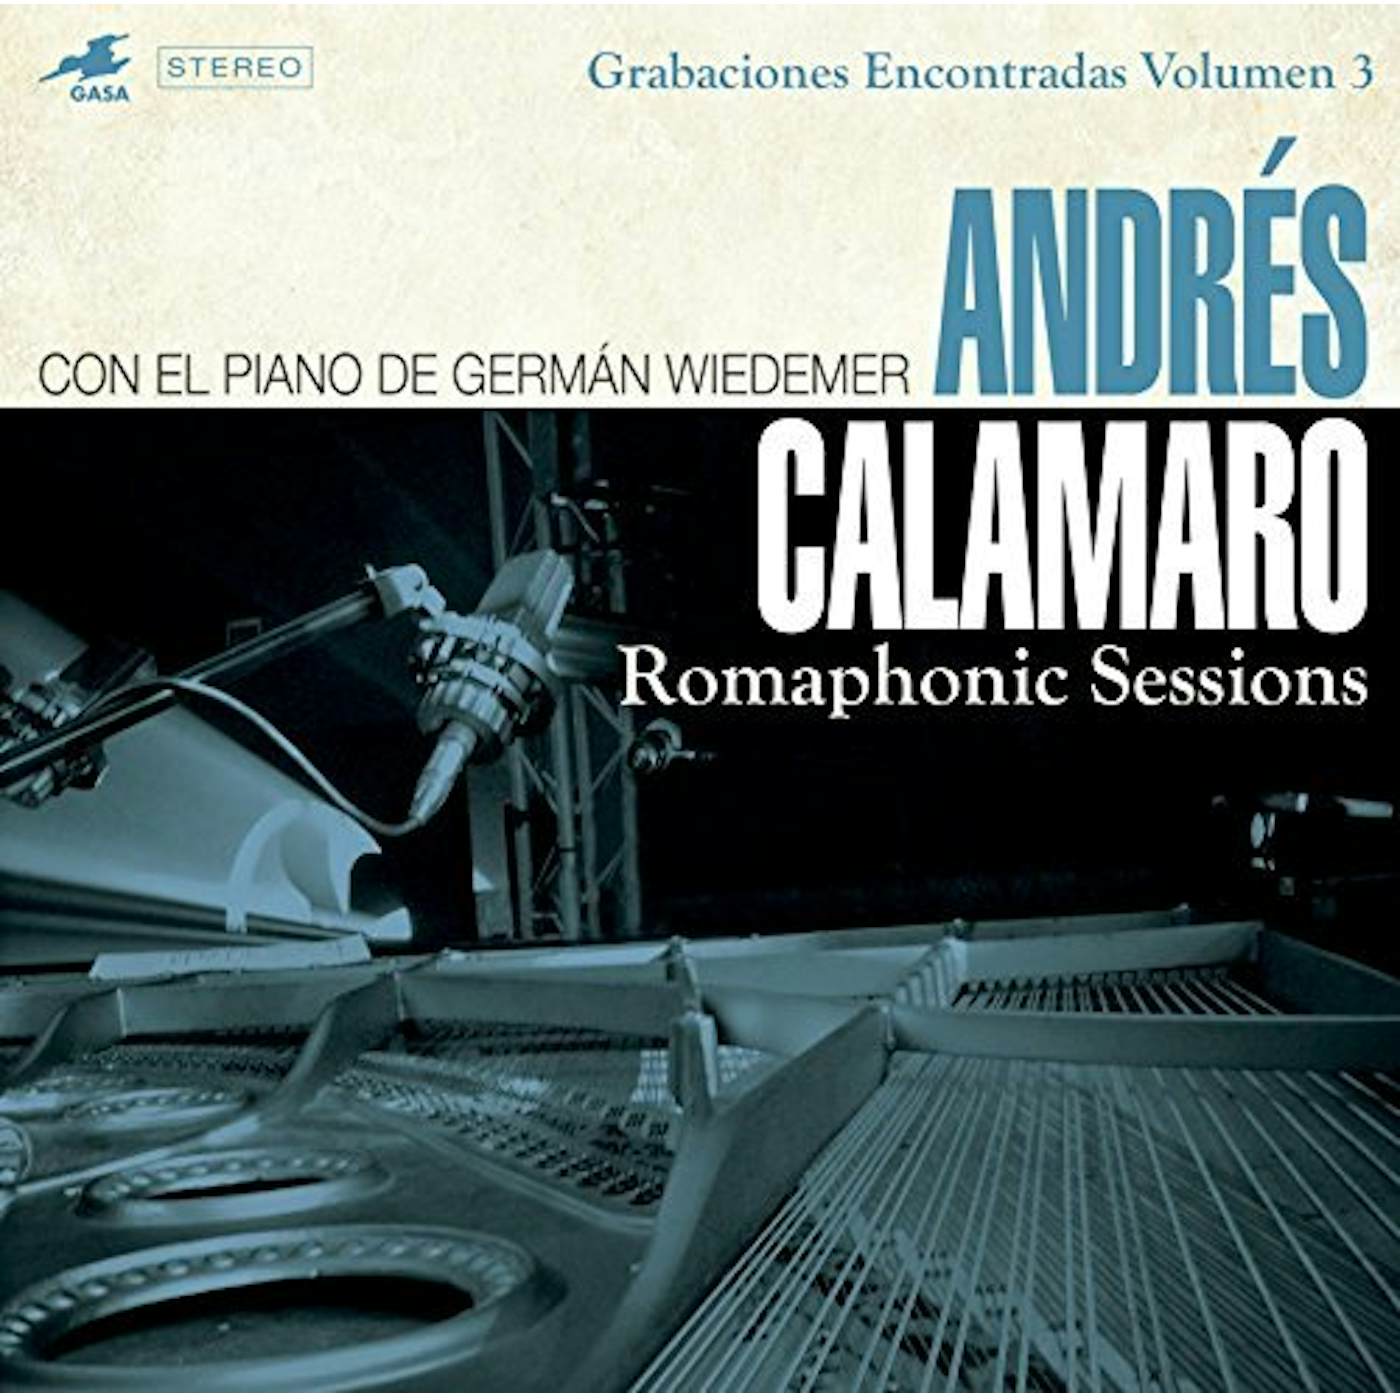 Andrés Calamaro Romaphonic Sessions Vinyl Record